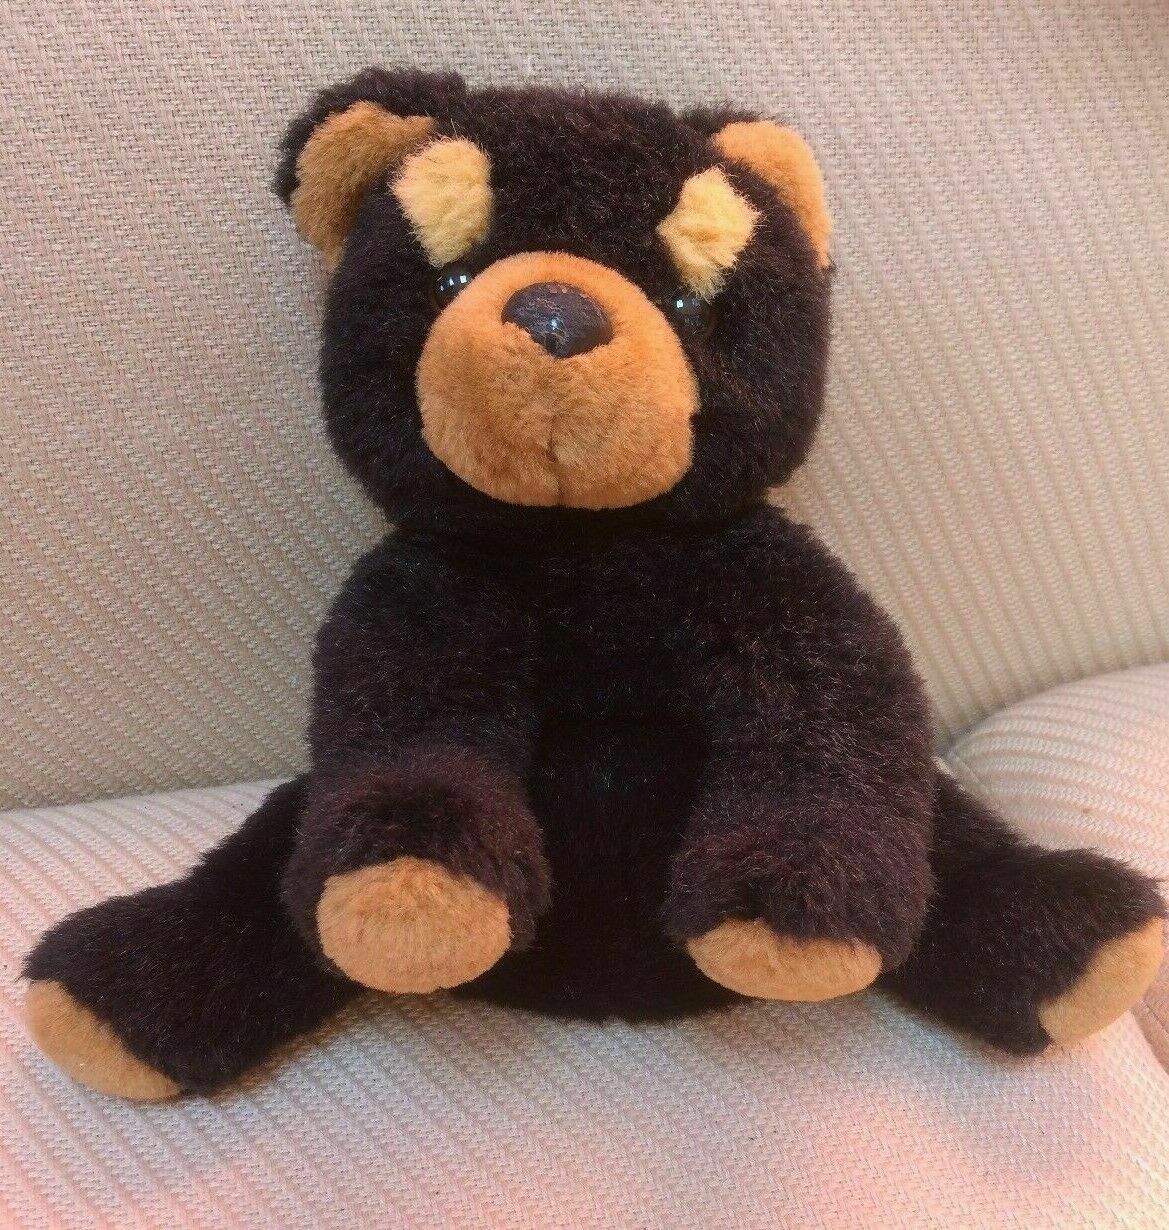 Teddy Bear Plush 8” Dark Brown Sitting Stuffed Animal Soft Clean Cuddly Vintage